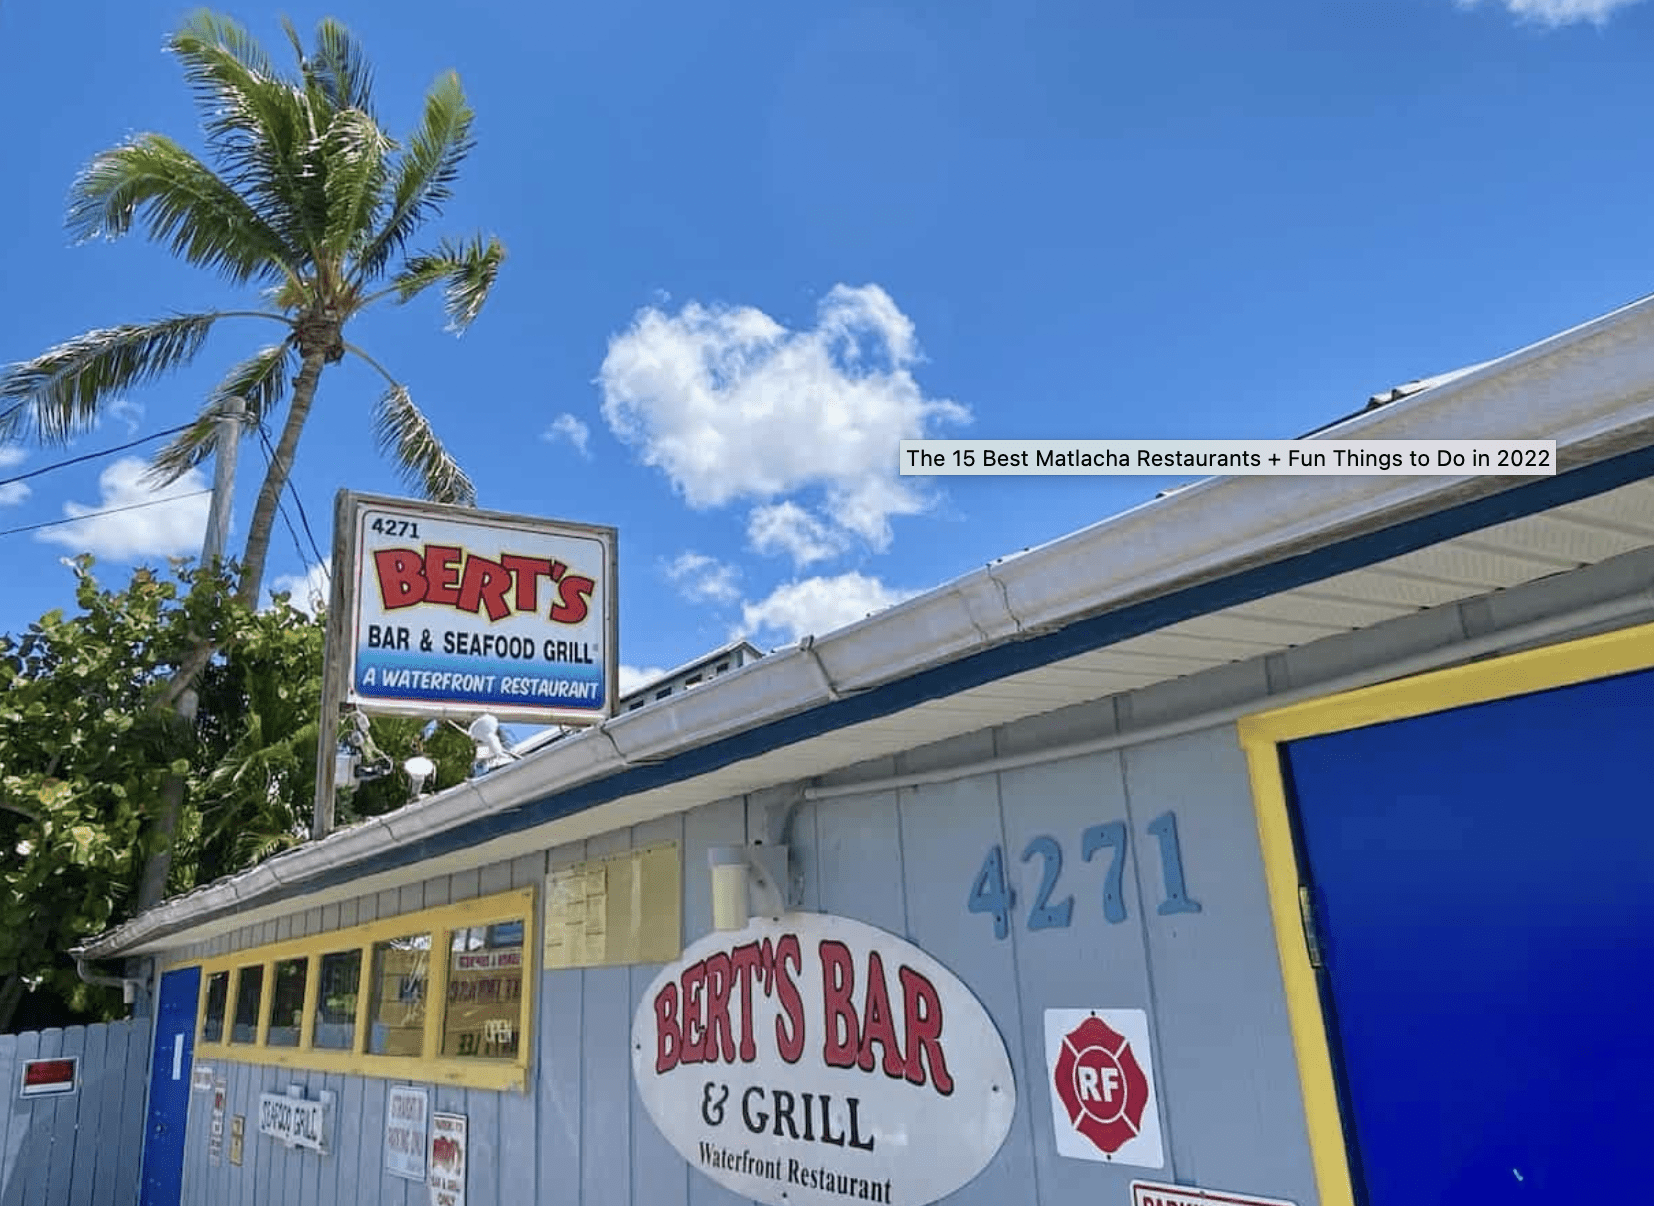 Bert's is considered one of the Best Restaurants in Matlacha FL